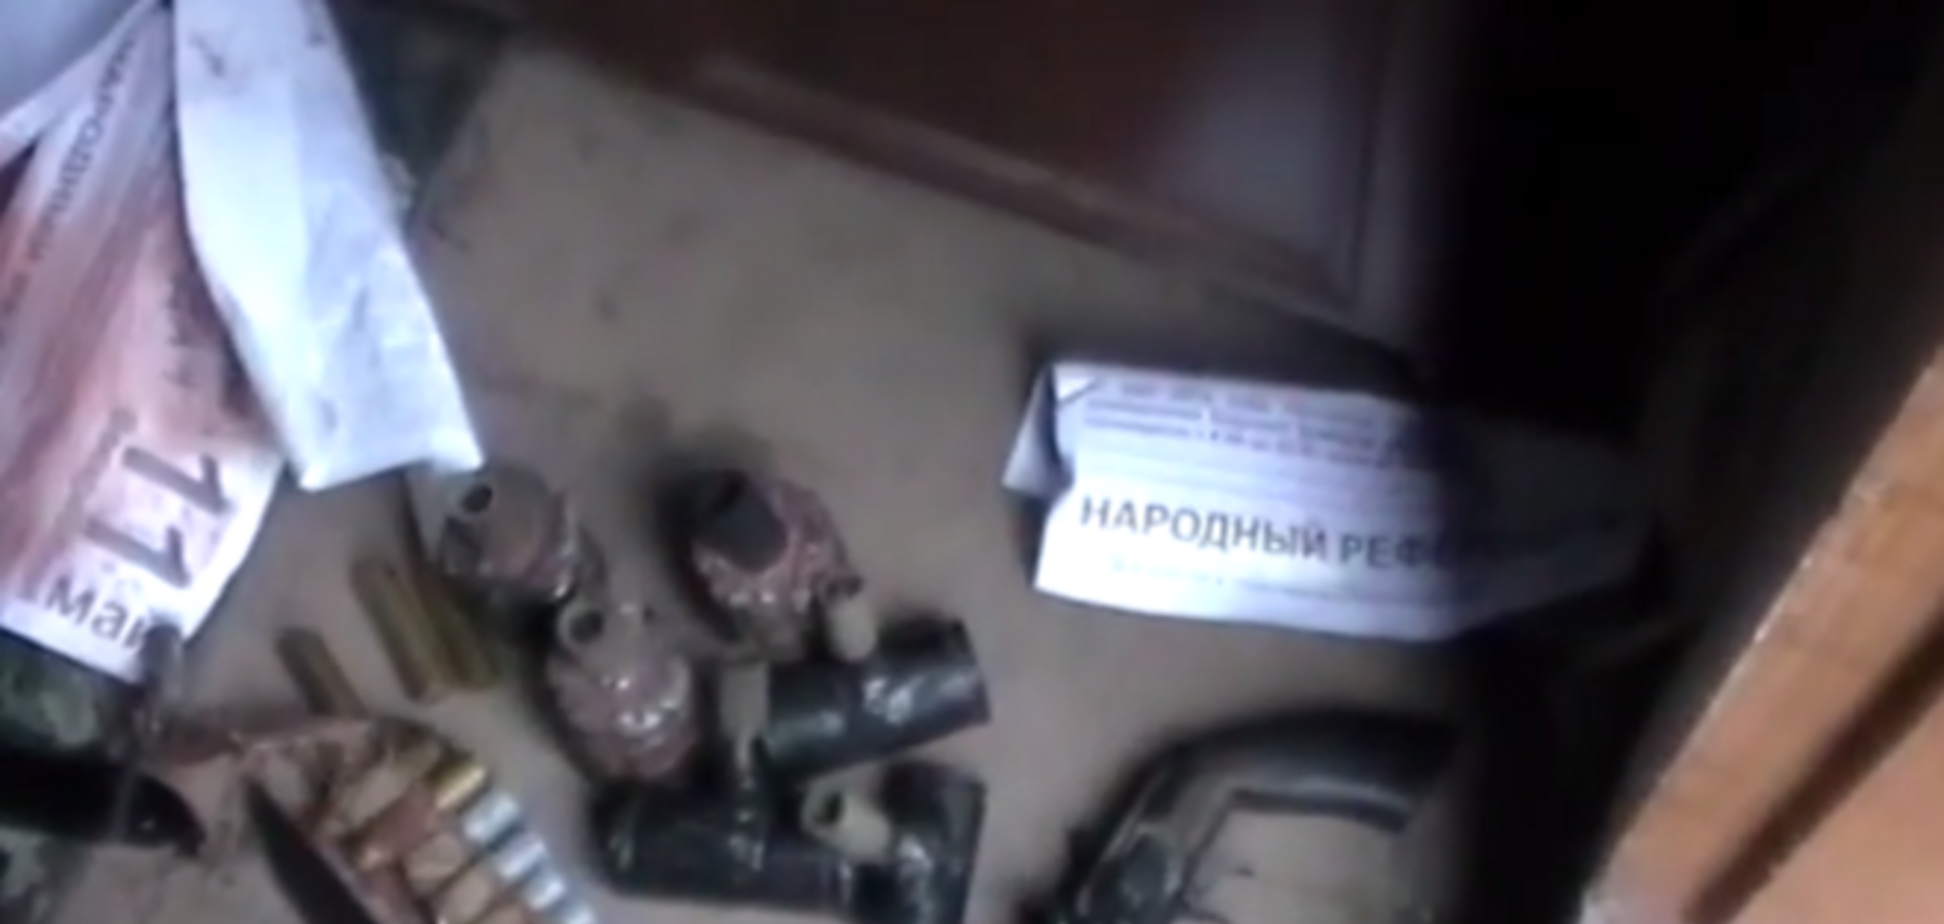 Близ Мариуполя обезврежена группа диверсантов с арсеналом оружия: опубликовано видео